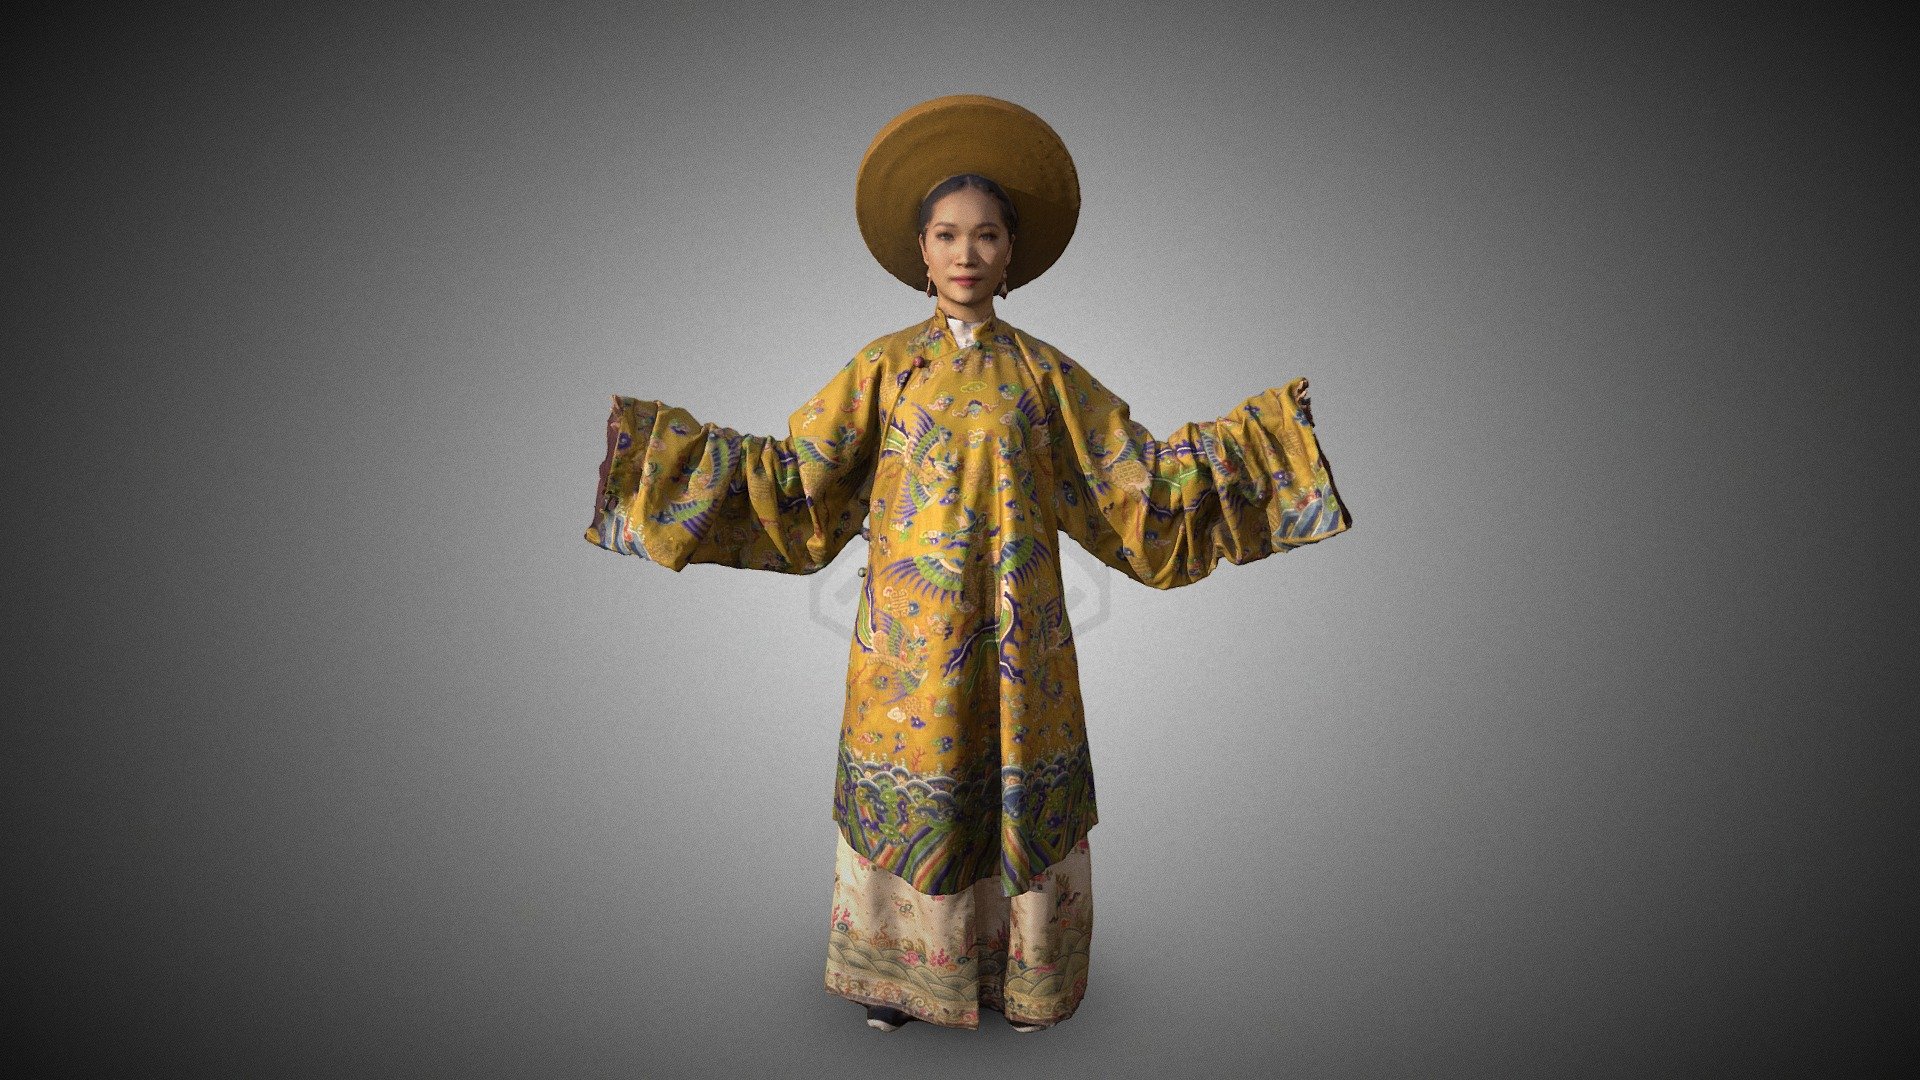 Bà là vợ chính thất của vua Đồng Khánh, tại vị năm 1916-1933
Bộ Cửu Phụng Viên Lĩnh được dùng trong ngày đại lễ, được đấu giá tại bên Pháp năm 2018 do nhà sưu tập Tuyết Nguyễn mang về Việt Nam 3d model